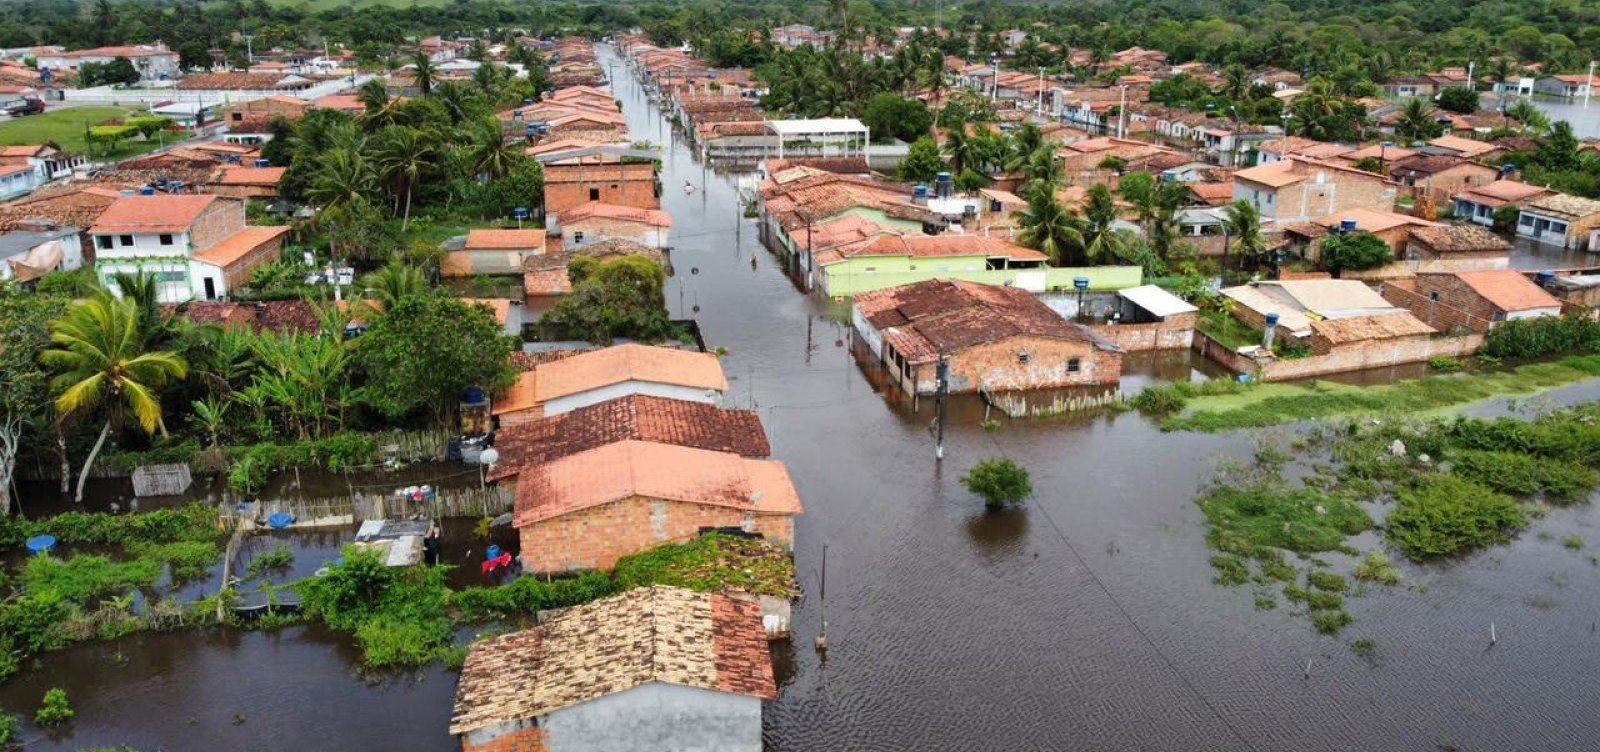 Famílias afetadas pelas chuvas na Bahia recebem alimentos e medicações por helicóptero